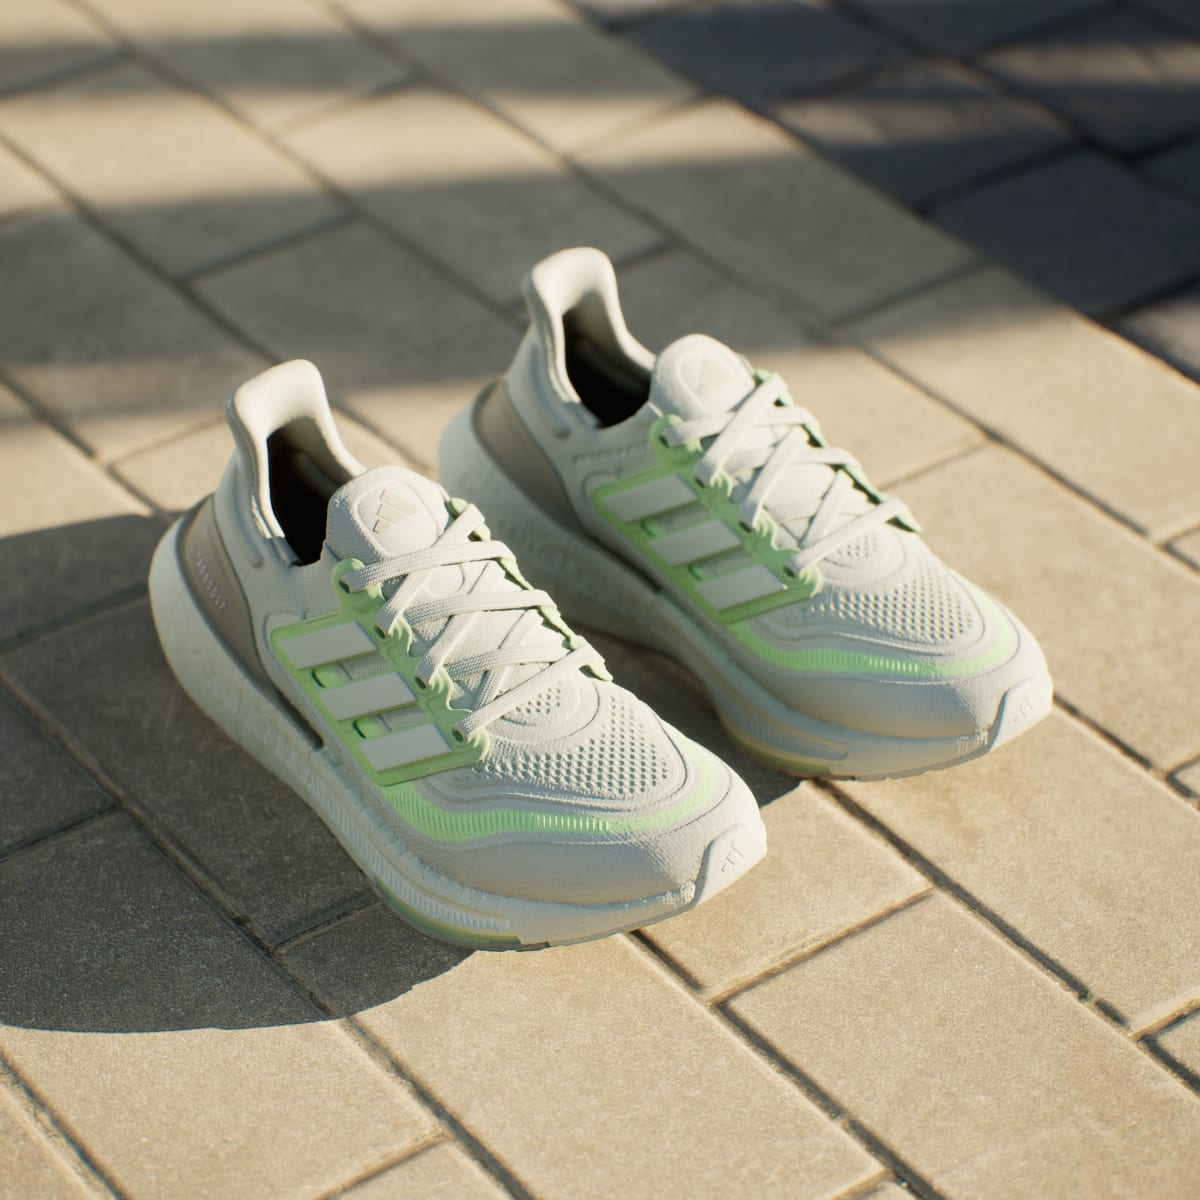 Adidas Ultraboost Light Running Shoes. 4